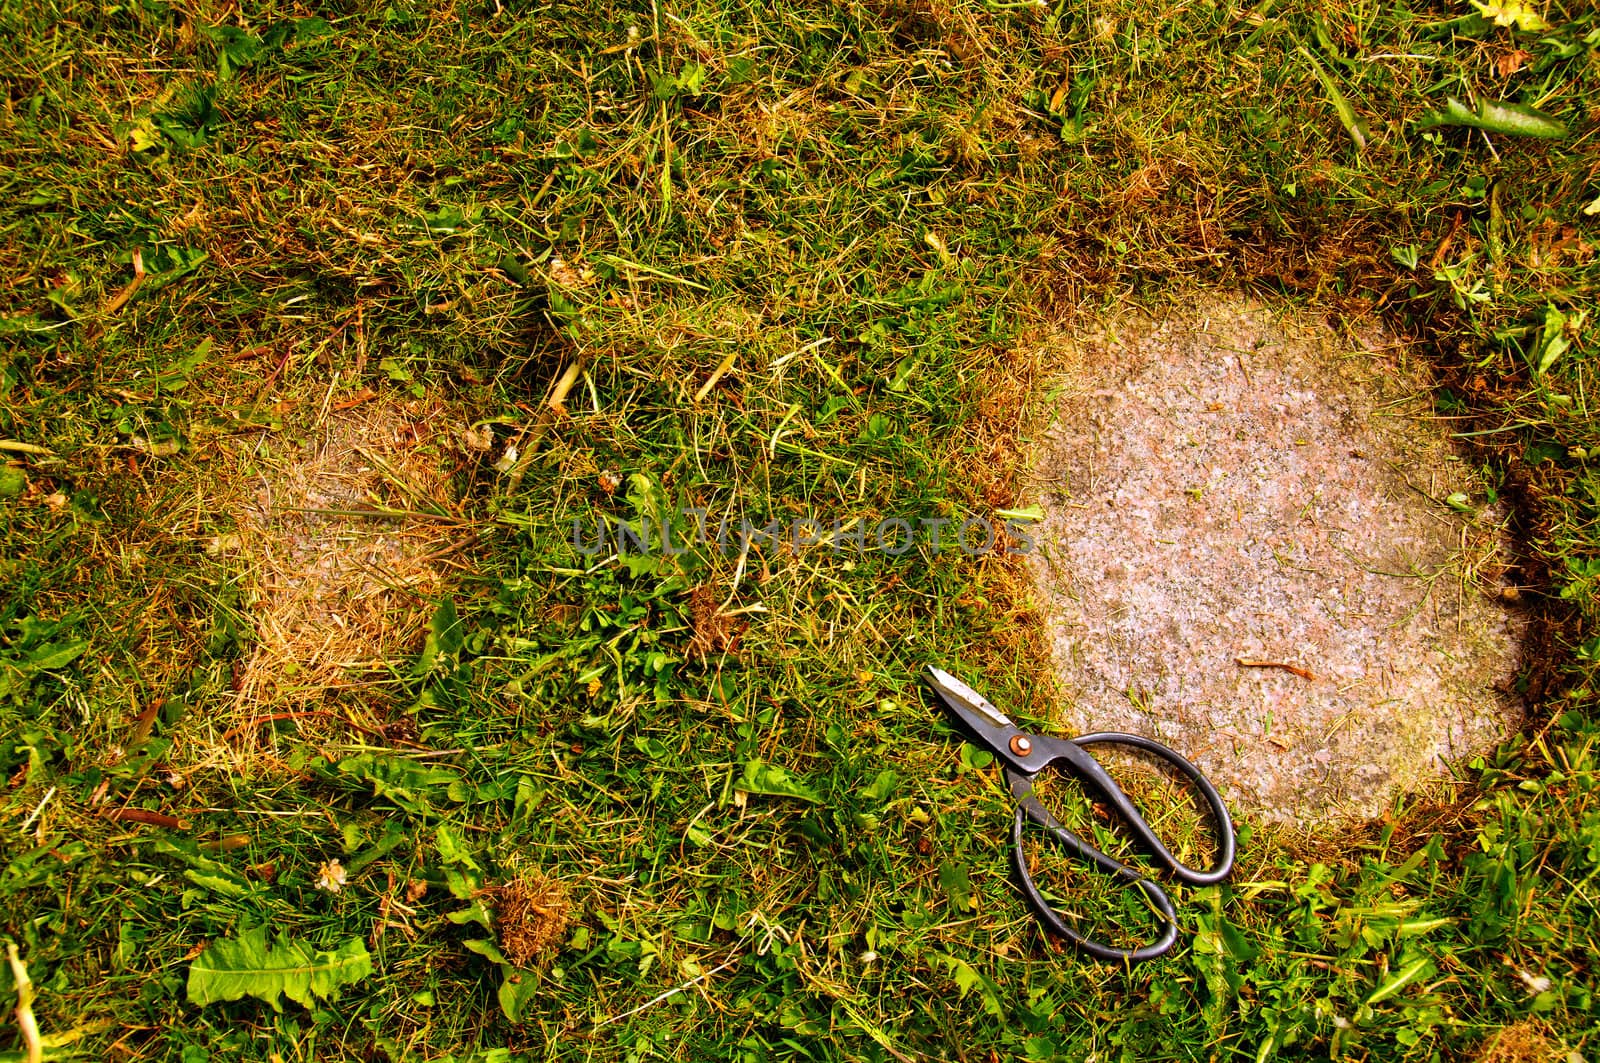 A garden needs constant maintenance.  Cutting grass with a scissors